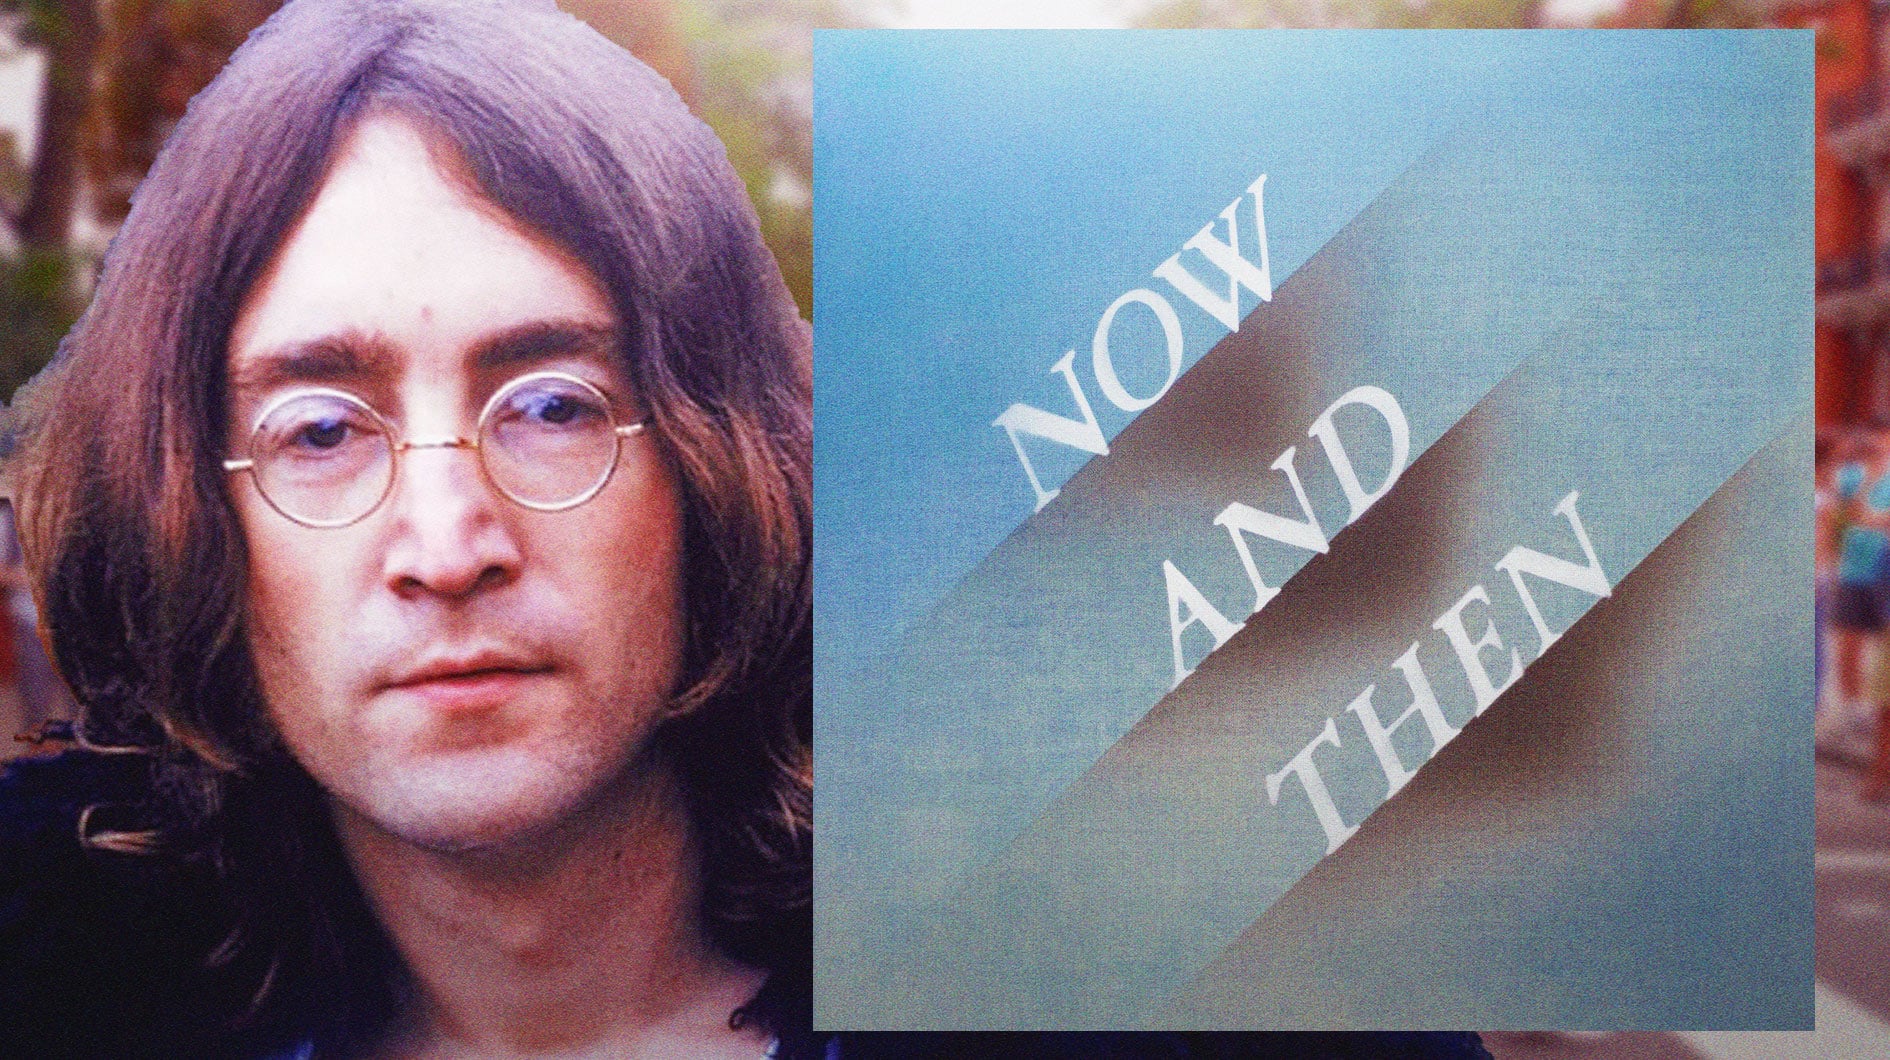 John Lennon's best Beatles song from each album